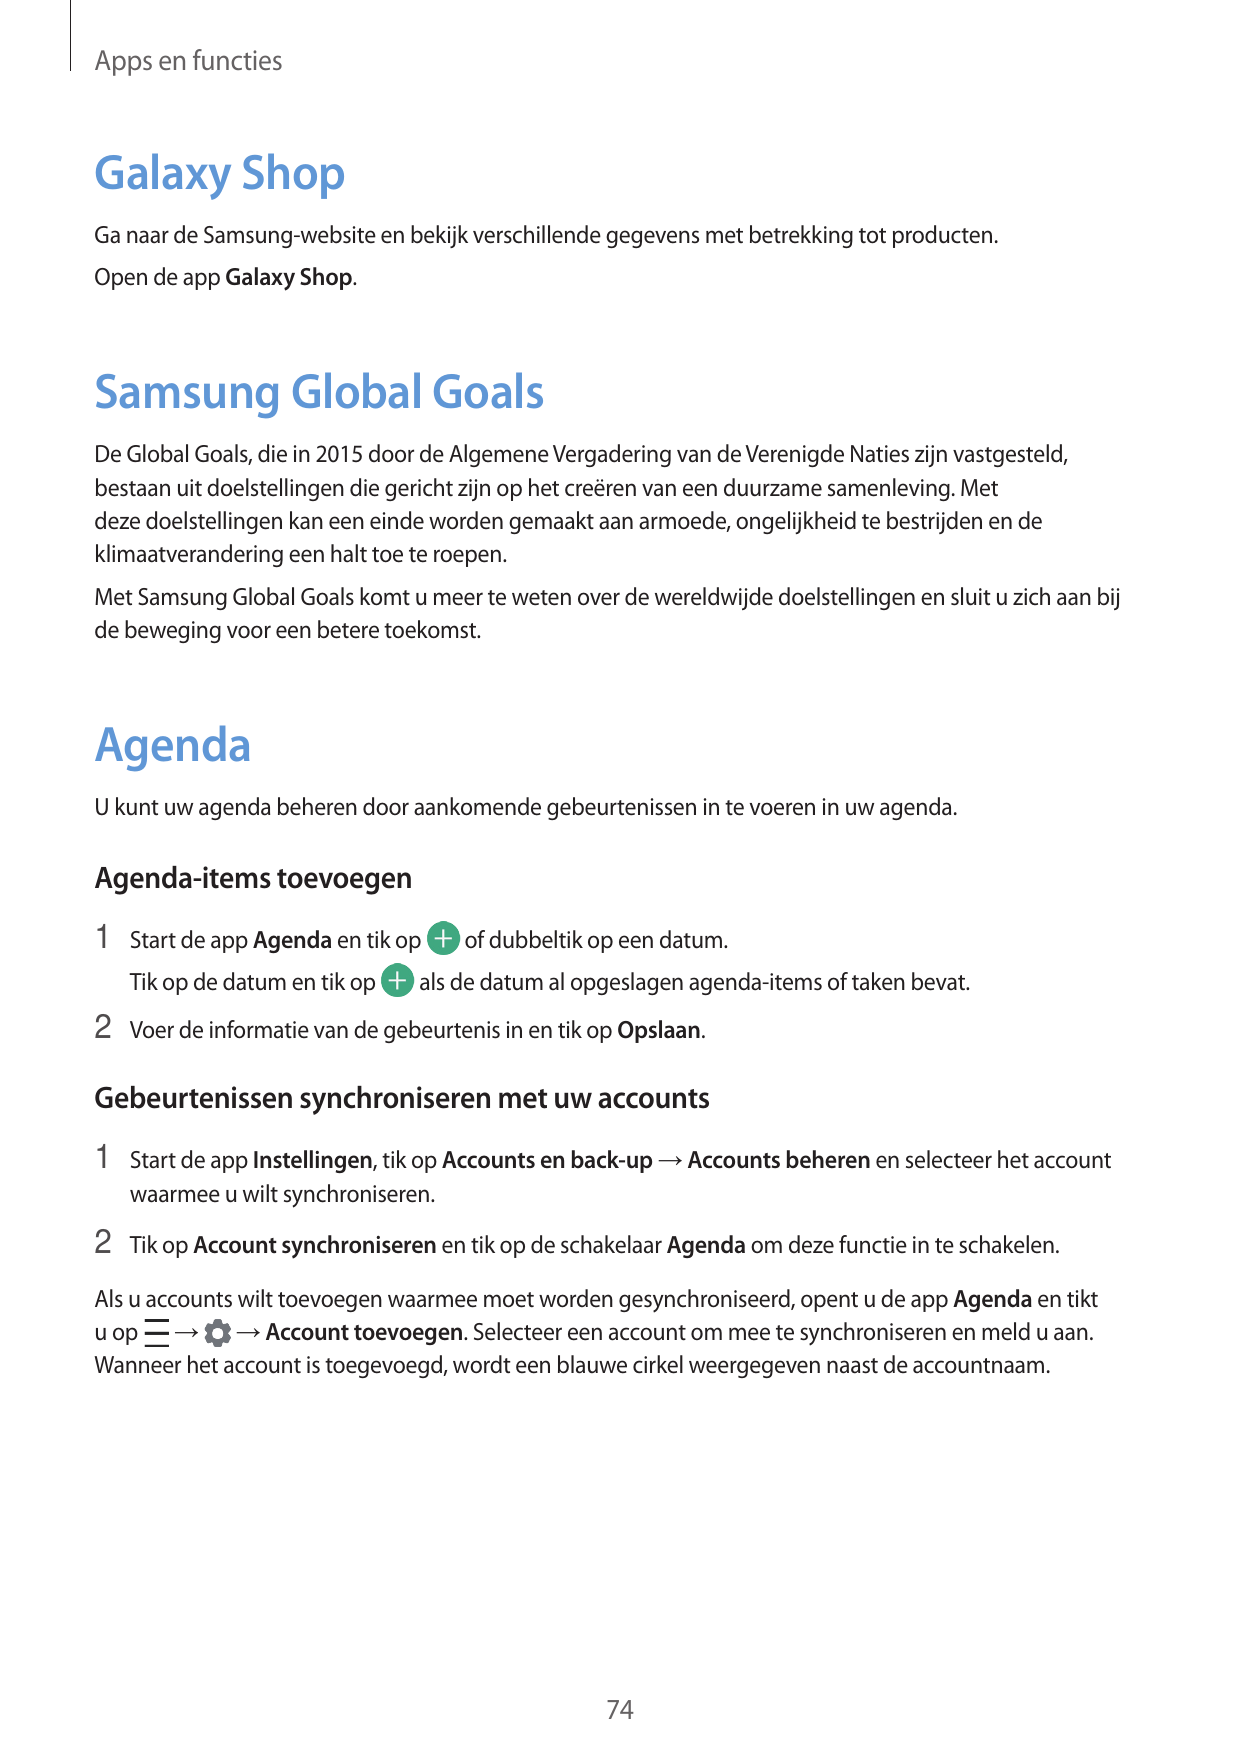 Apps en functiesGalaxy ShopGa naar de Samsung-website en bekijk verschillende gegevens met betrekking tot producten.Open de app 